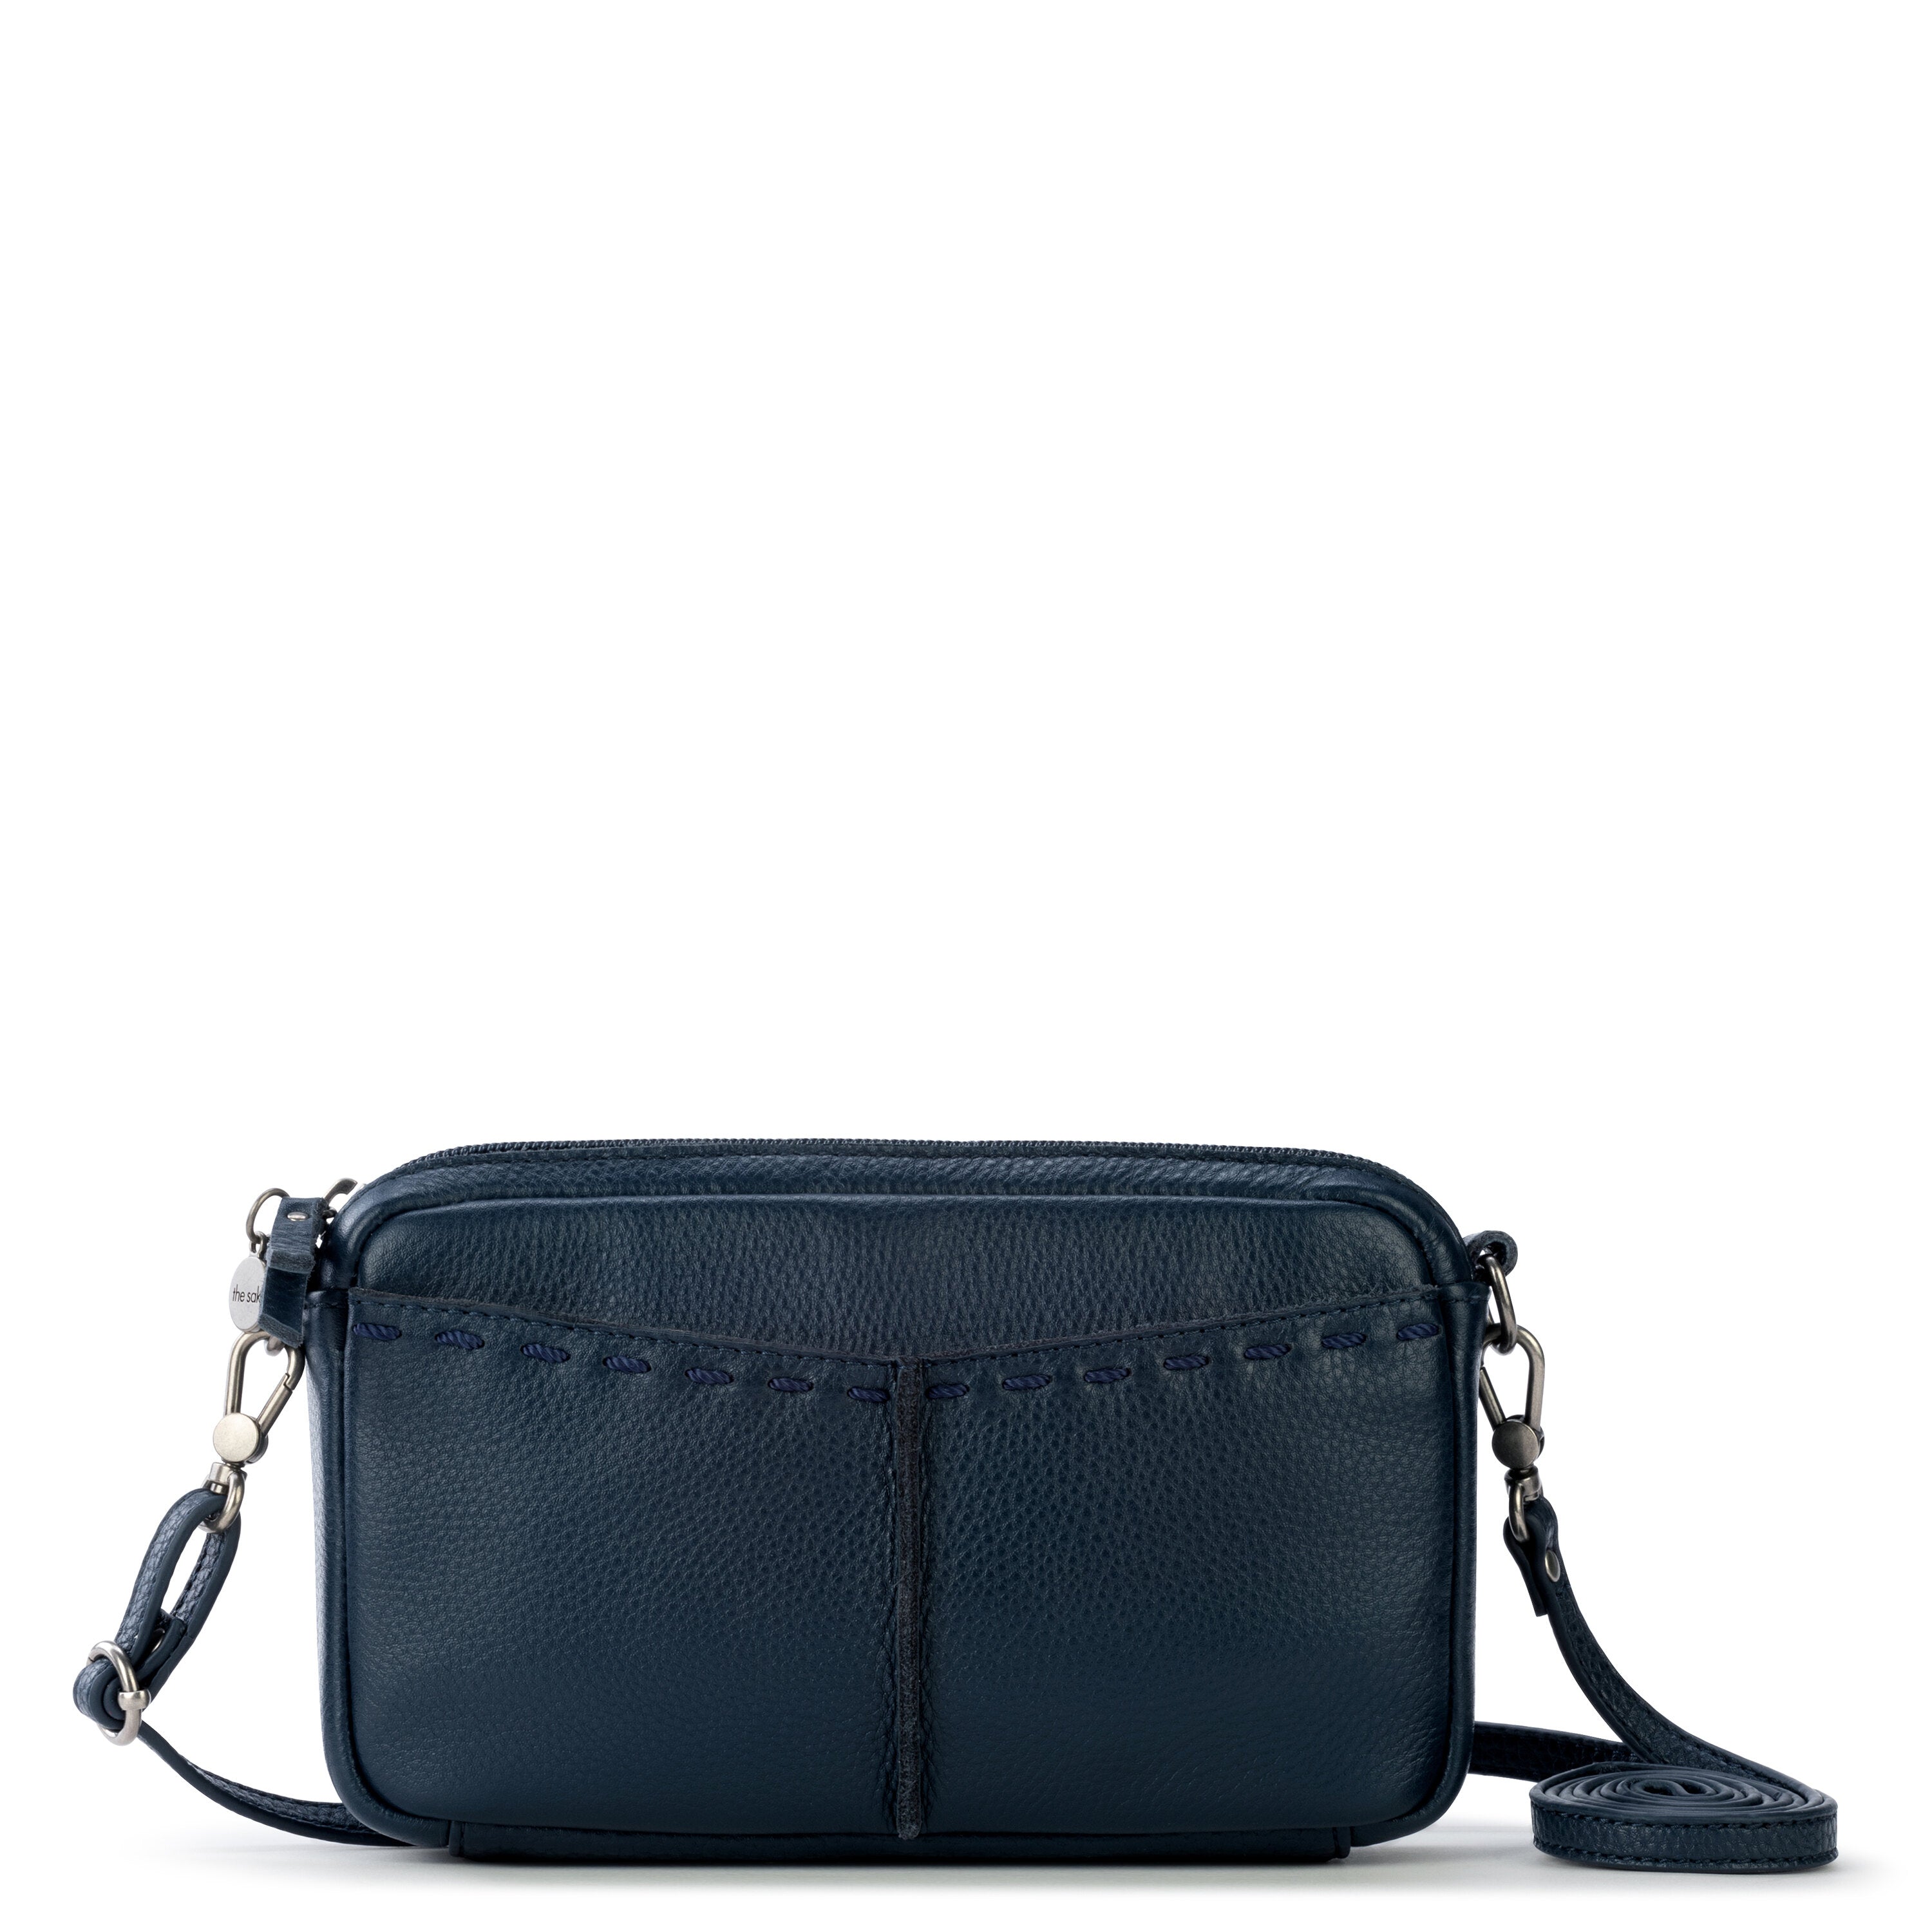 Cora Large Pebbled Leather Shoulder Bag - Luggage